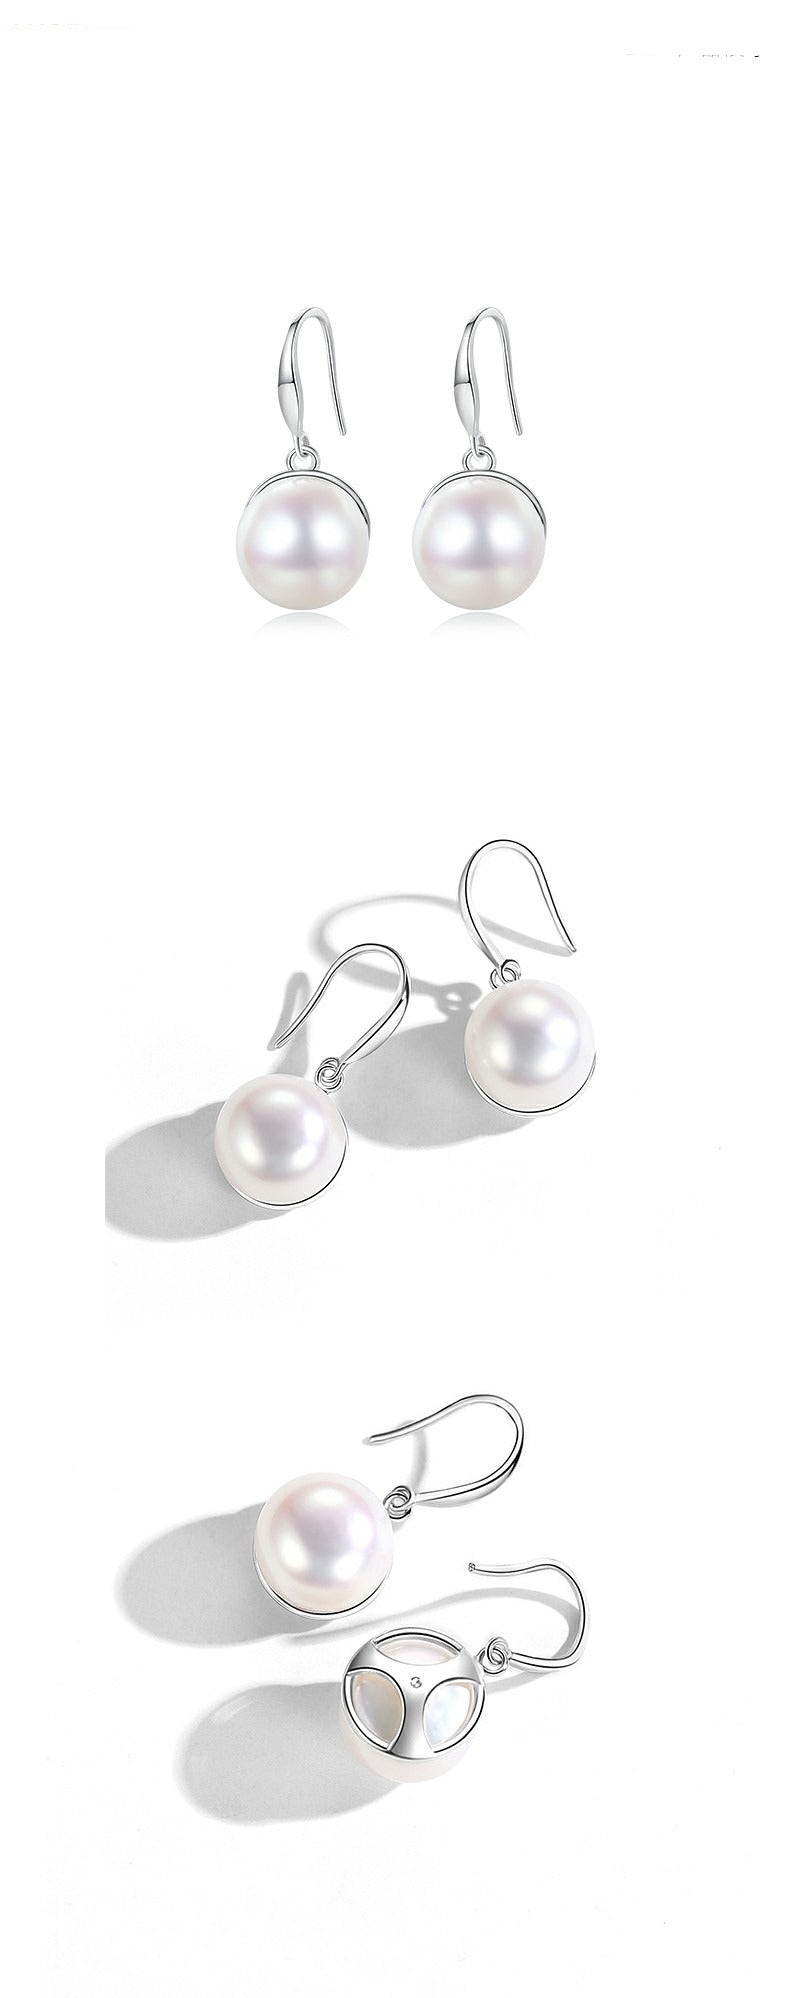 Questa Perla Silver earrings by Notteluna